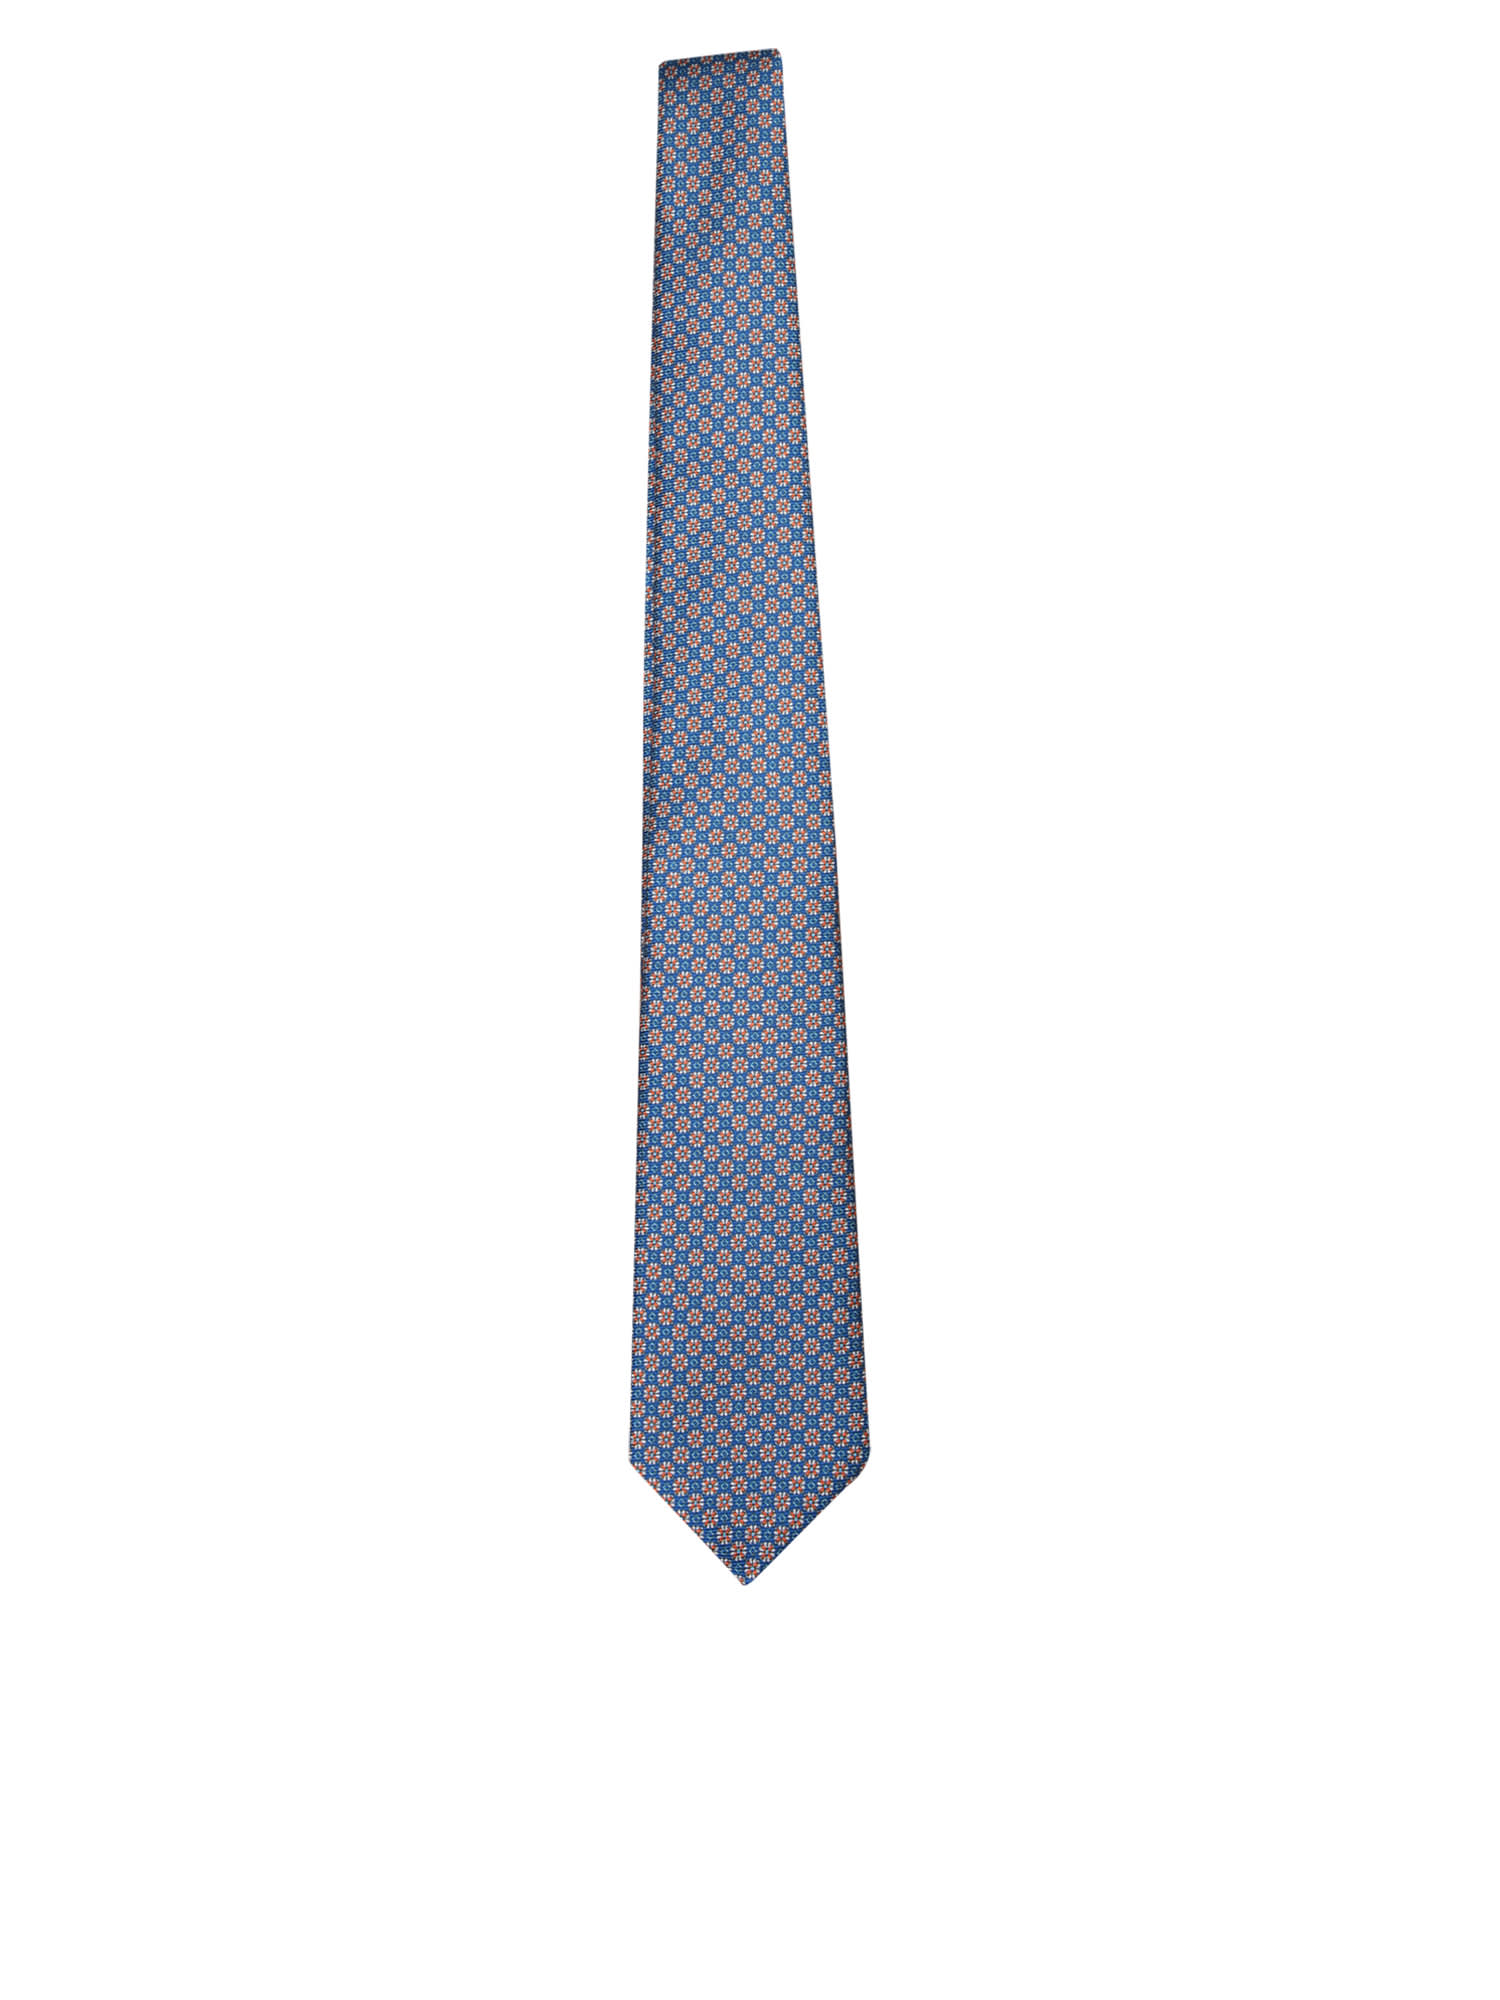 Patterned Tie Blue/green/orange